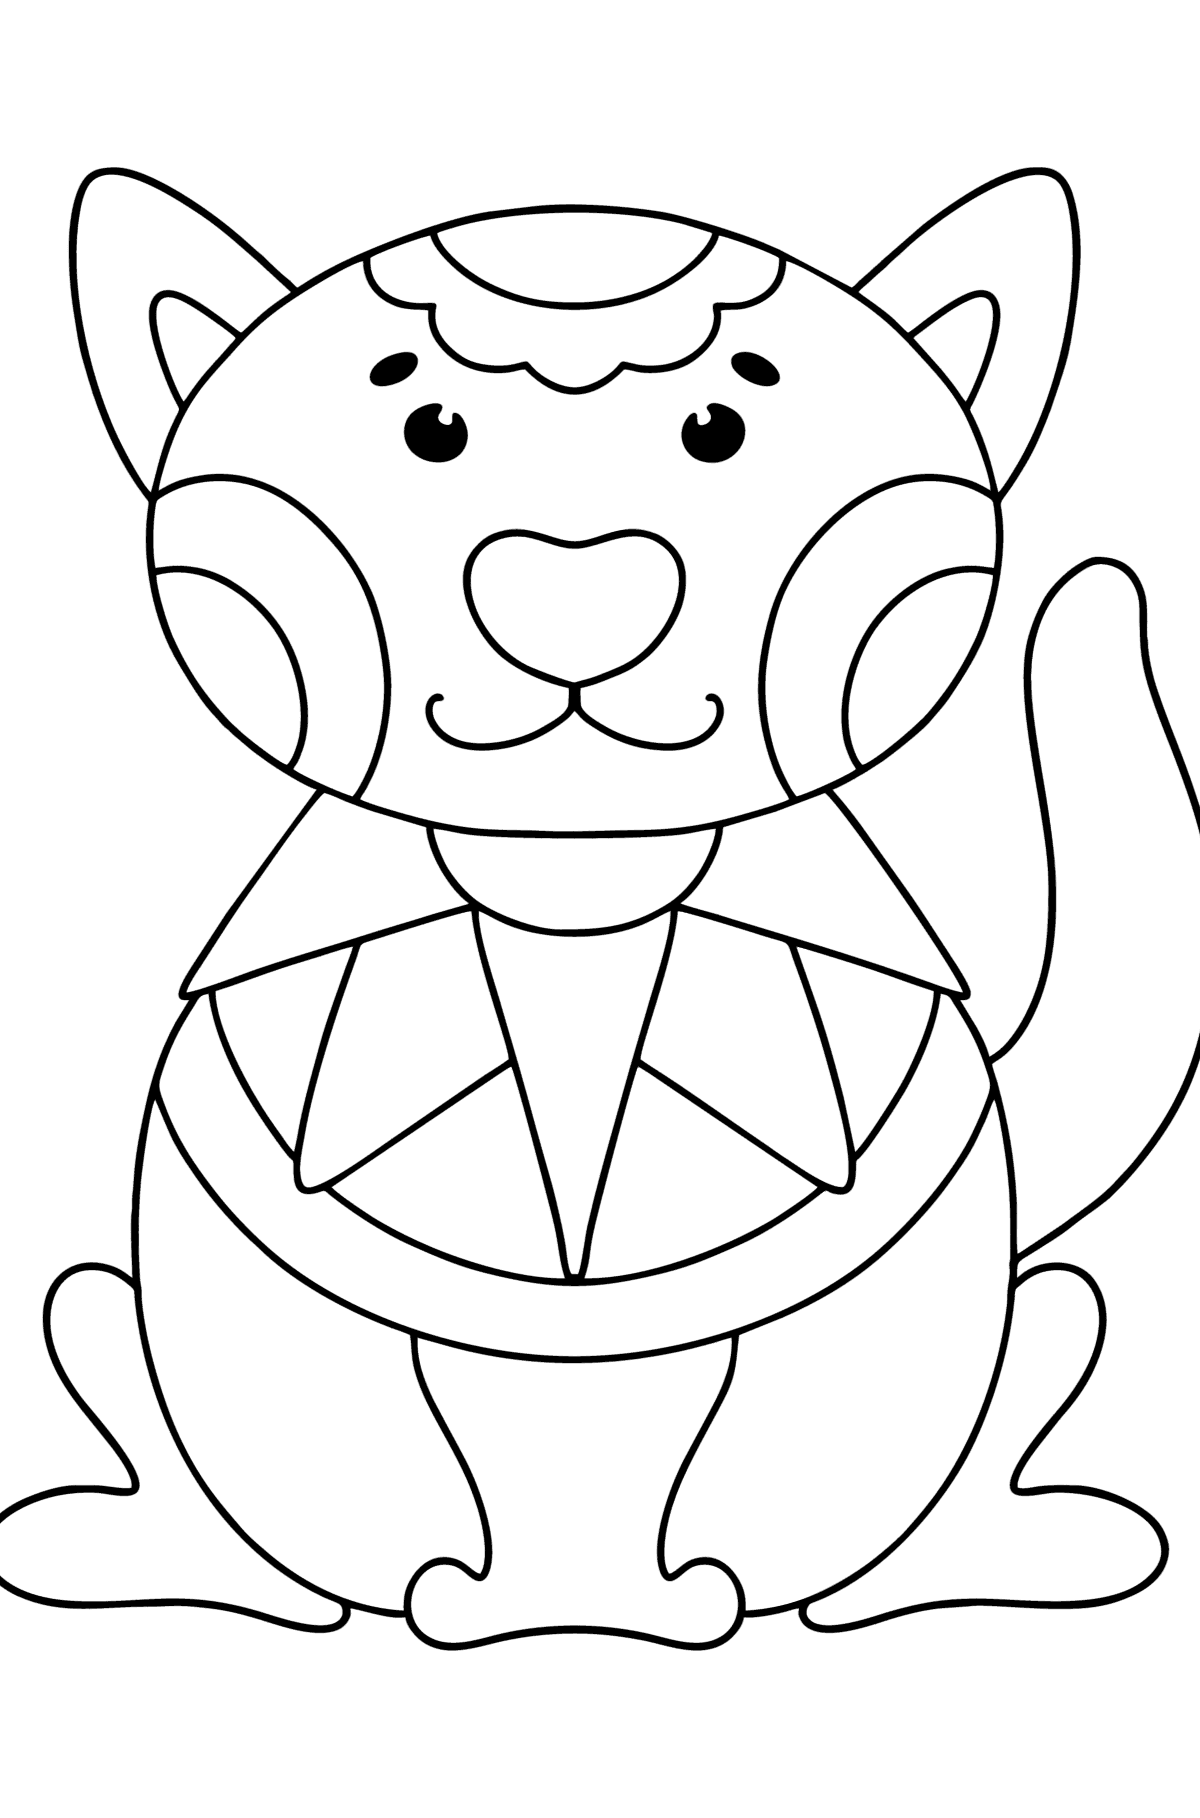 Anti stress katt tegning til fargelegging - Tegninger til fargelegging for barn